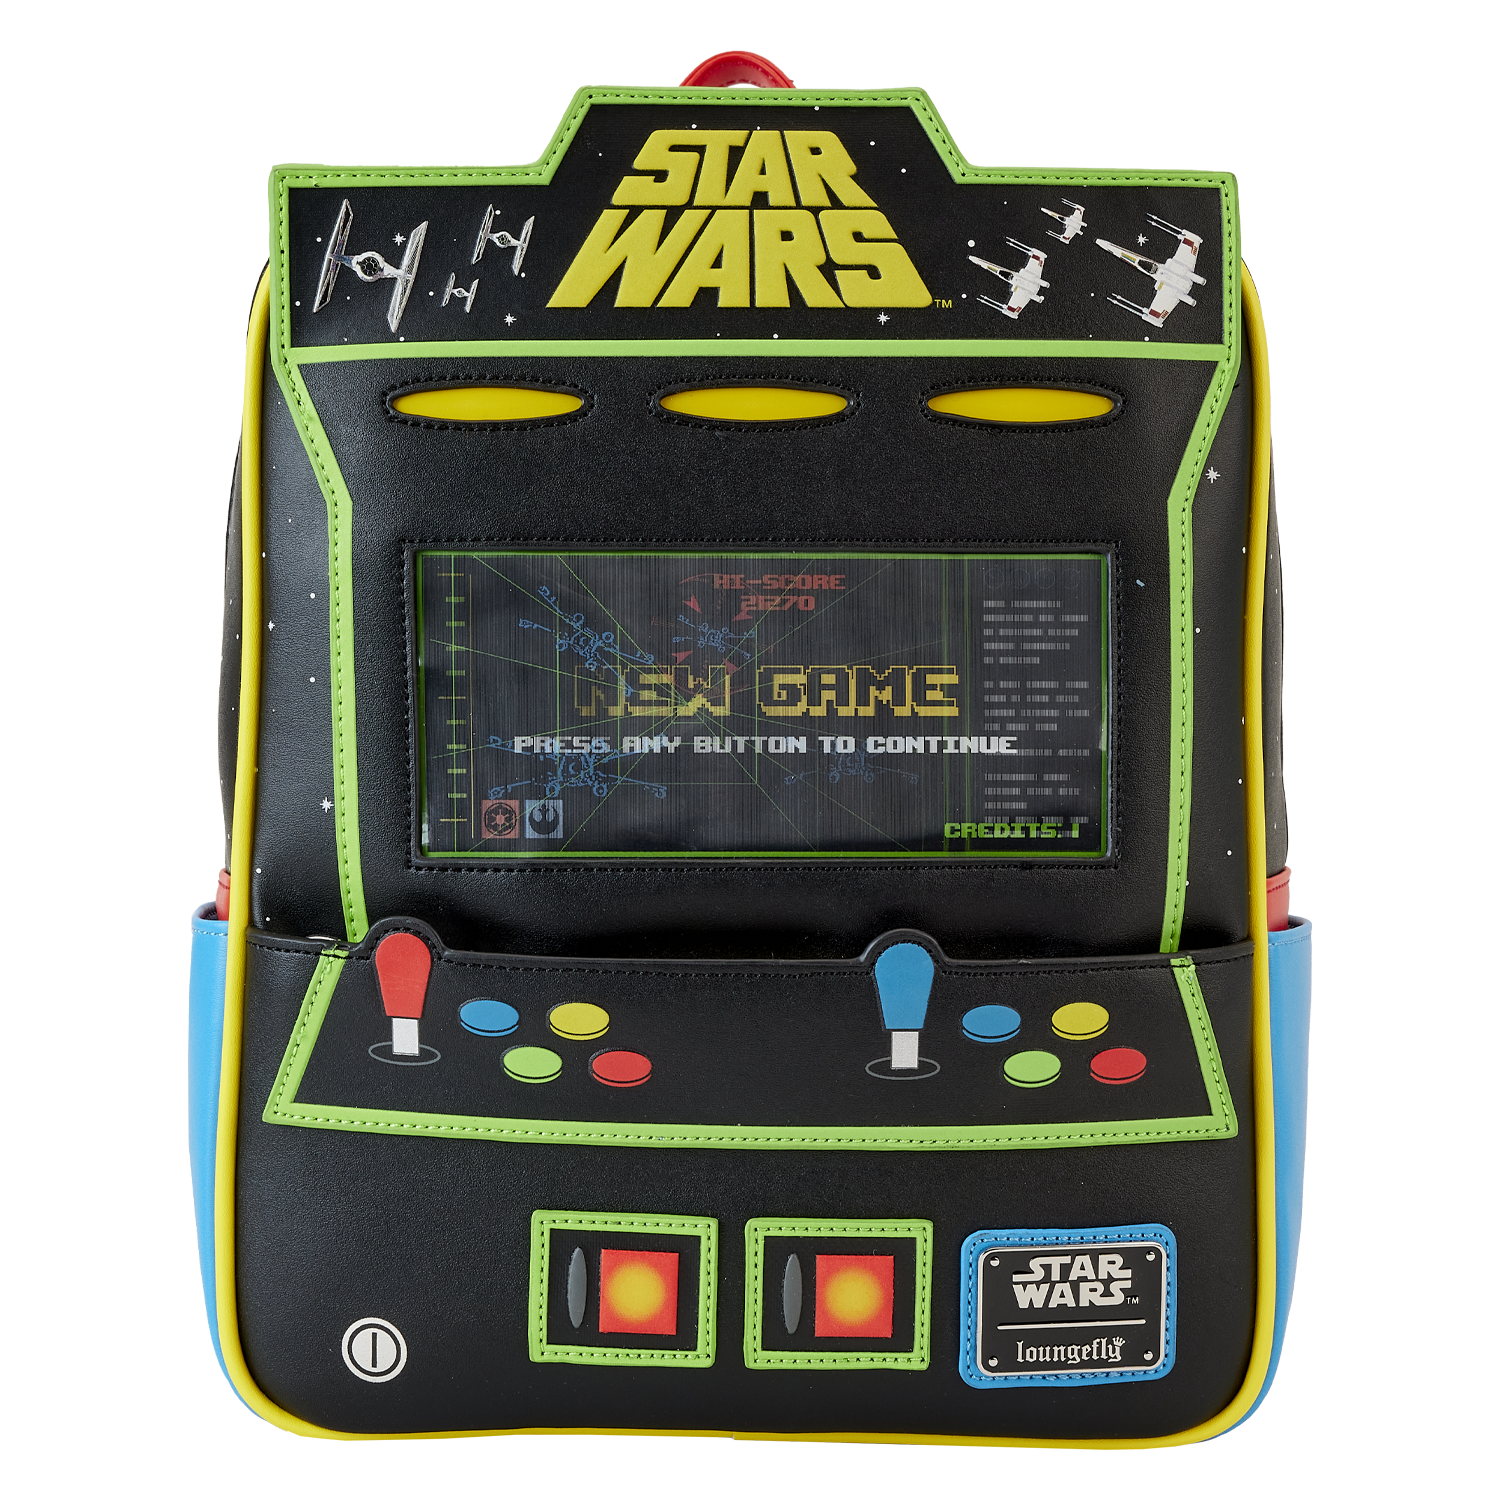 Star Wars™ Arcade Game